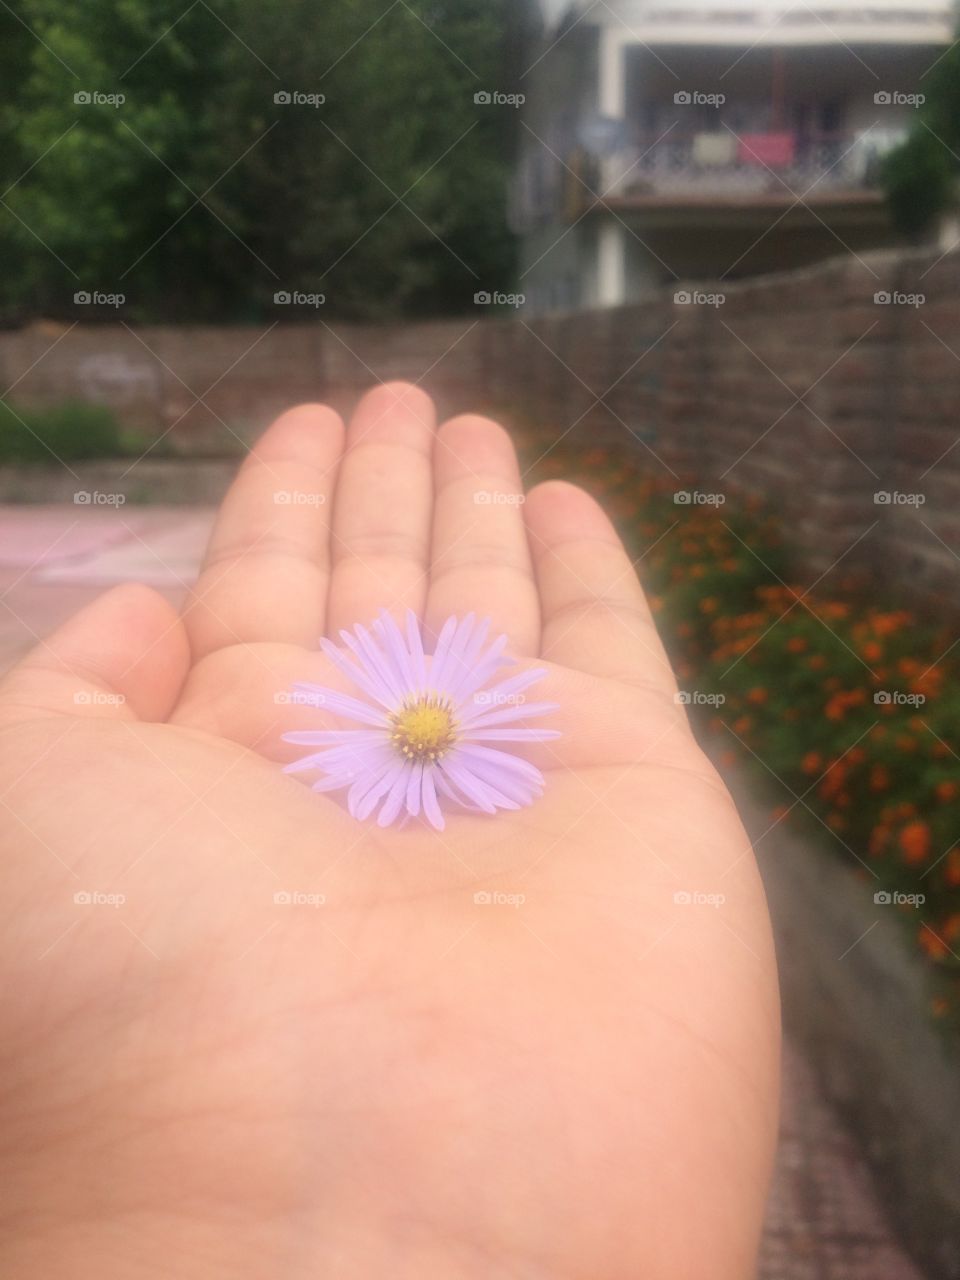 Flower love it